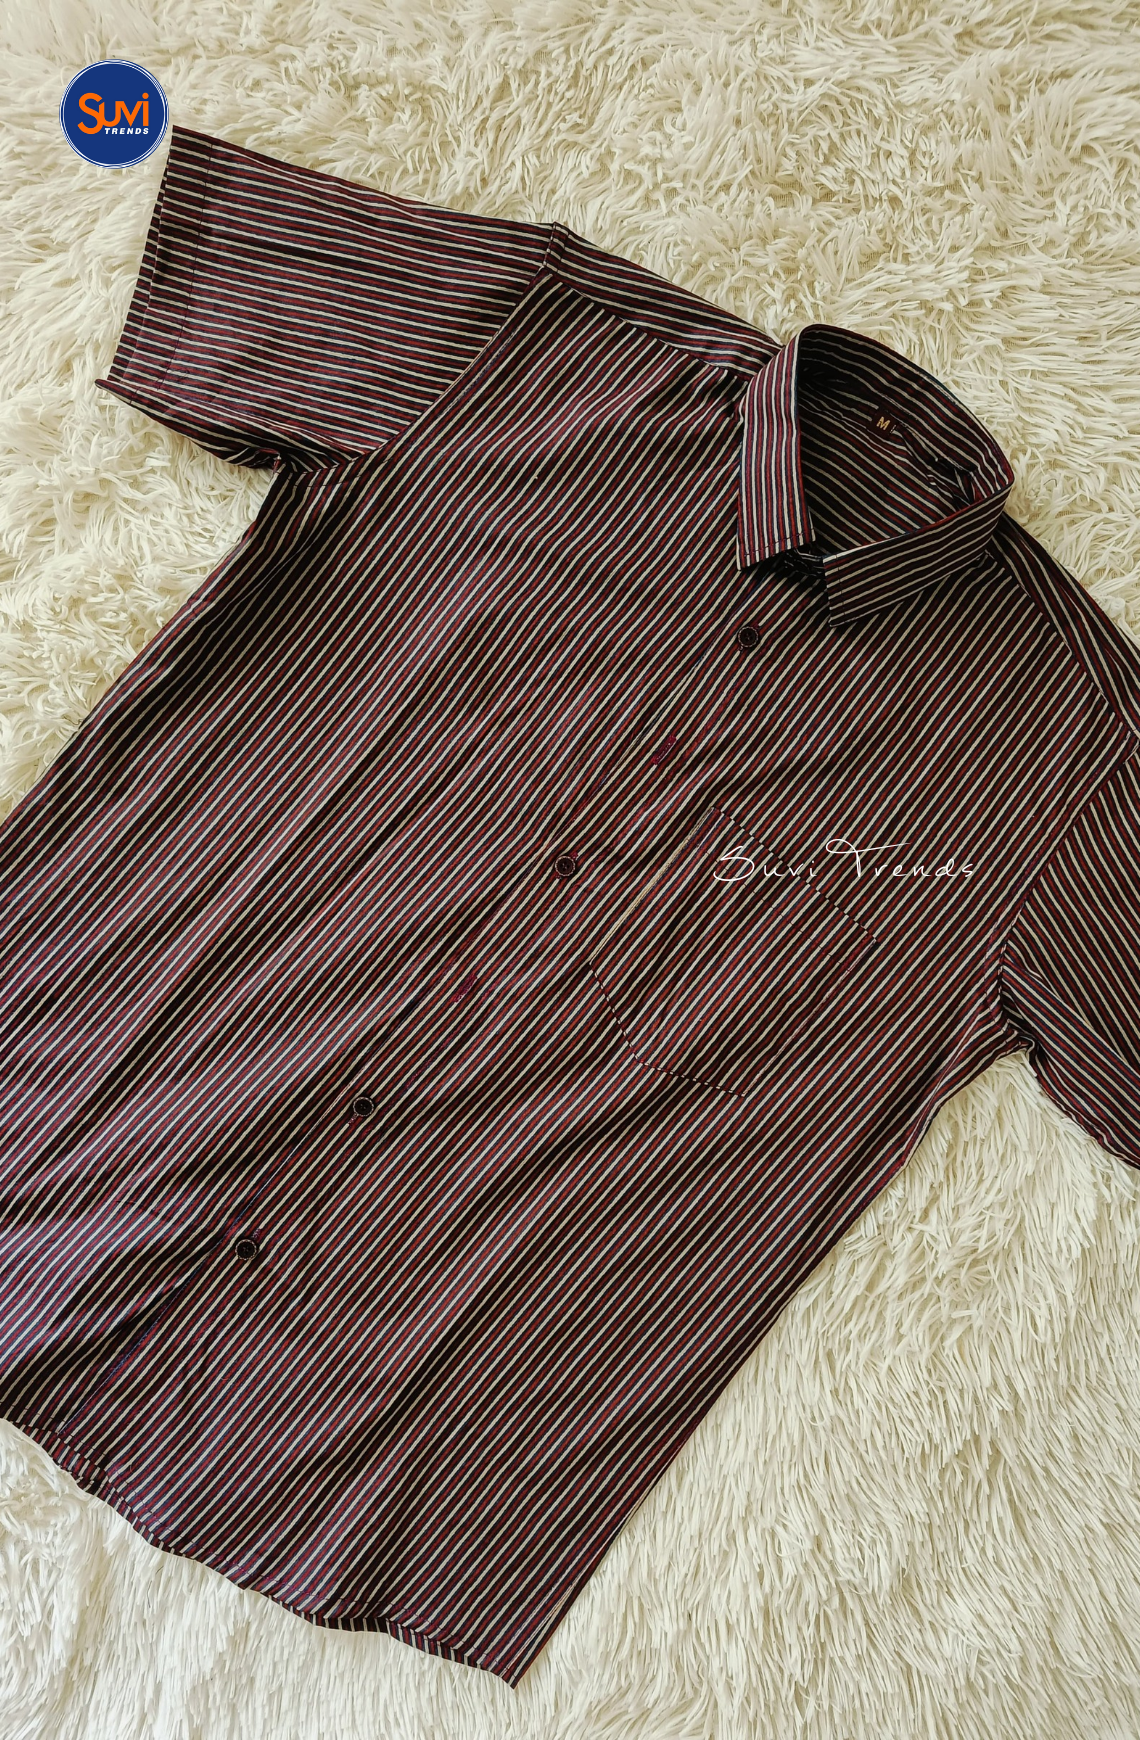 Men's Pure Cotton Shirt - Brown